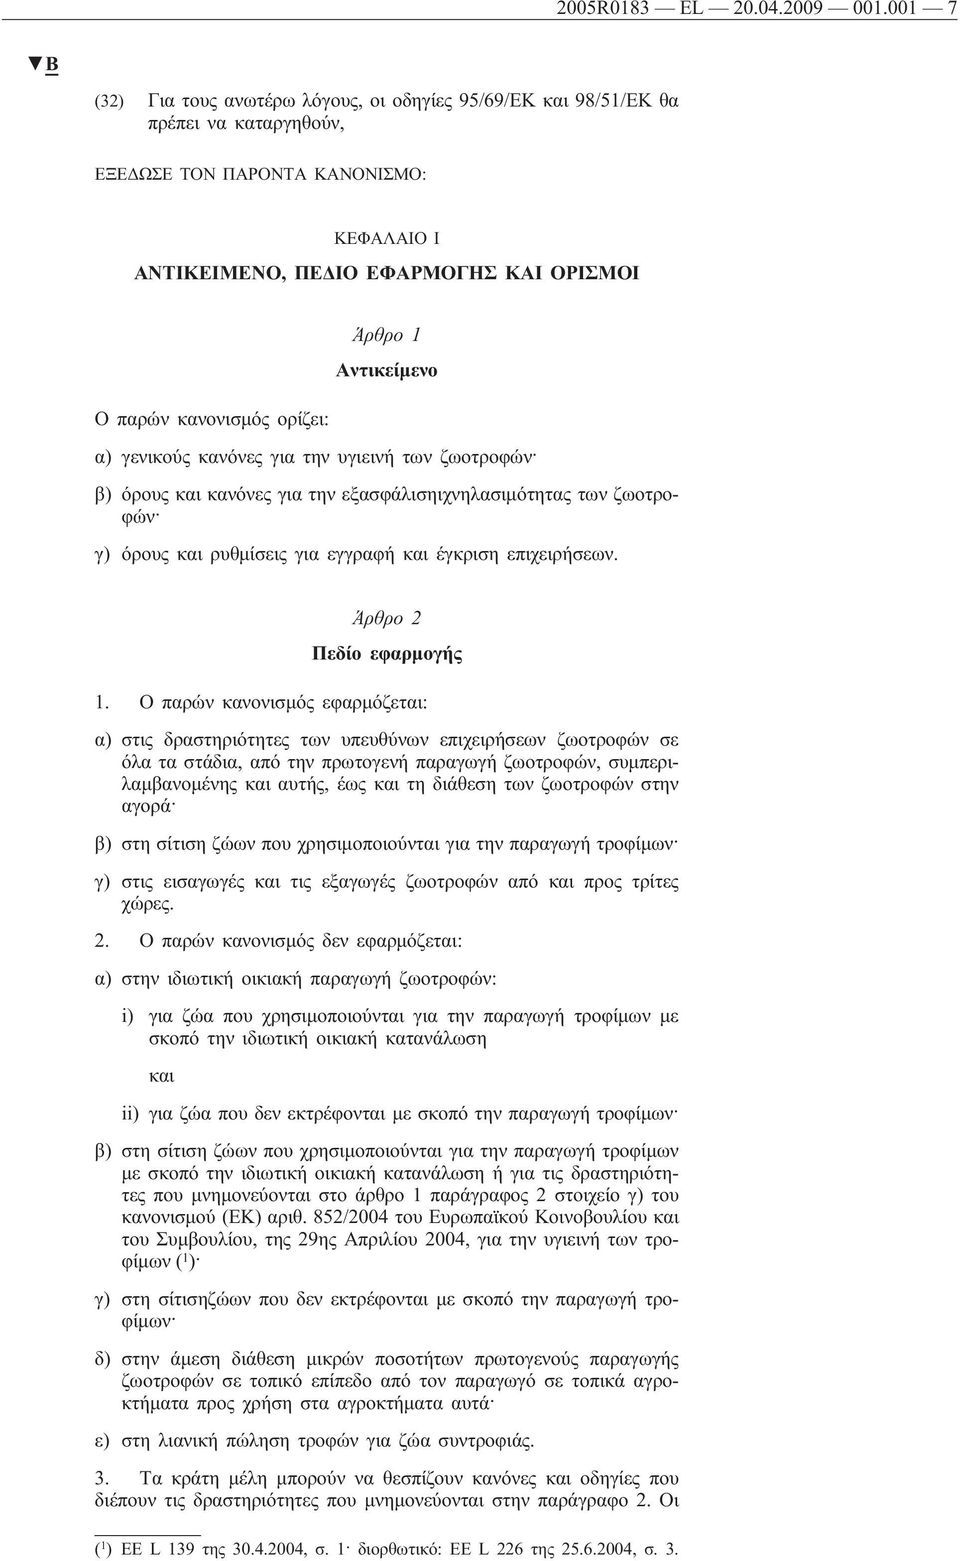 ορίζει: Άρθρο 1 Αντικείμενο α) γενικούς κανόνες για την υγιεινή των ζωοτροφών β) όρους και κανόνες για την εξασφάλισηιχνηλασιμότητας των ζωοτροφών γ) όρους και ρυθμίσεις για εγγραφή και έγκριση